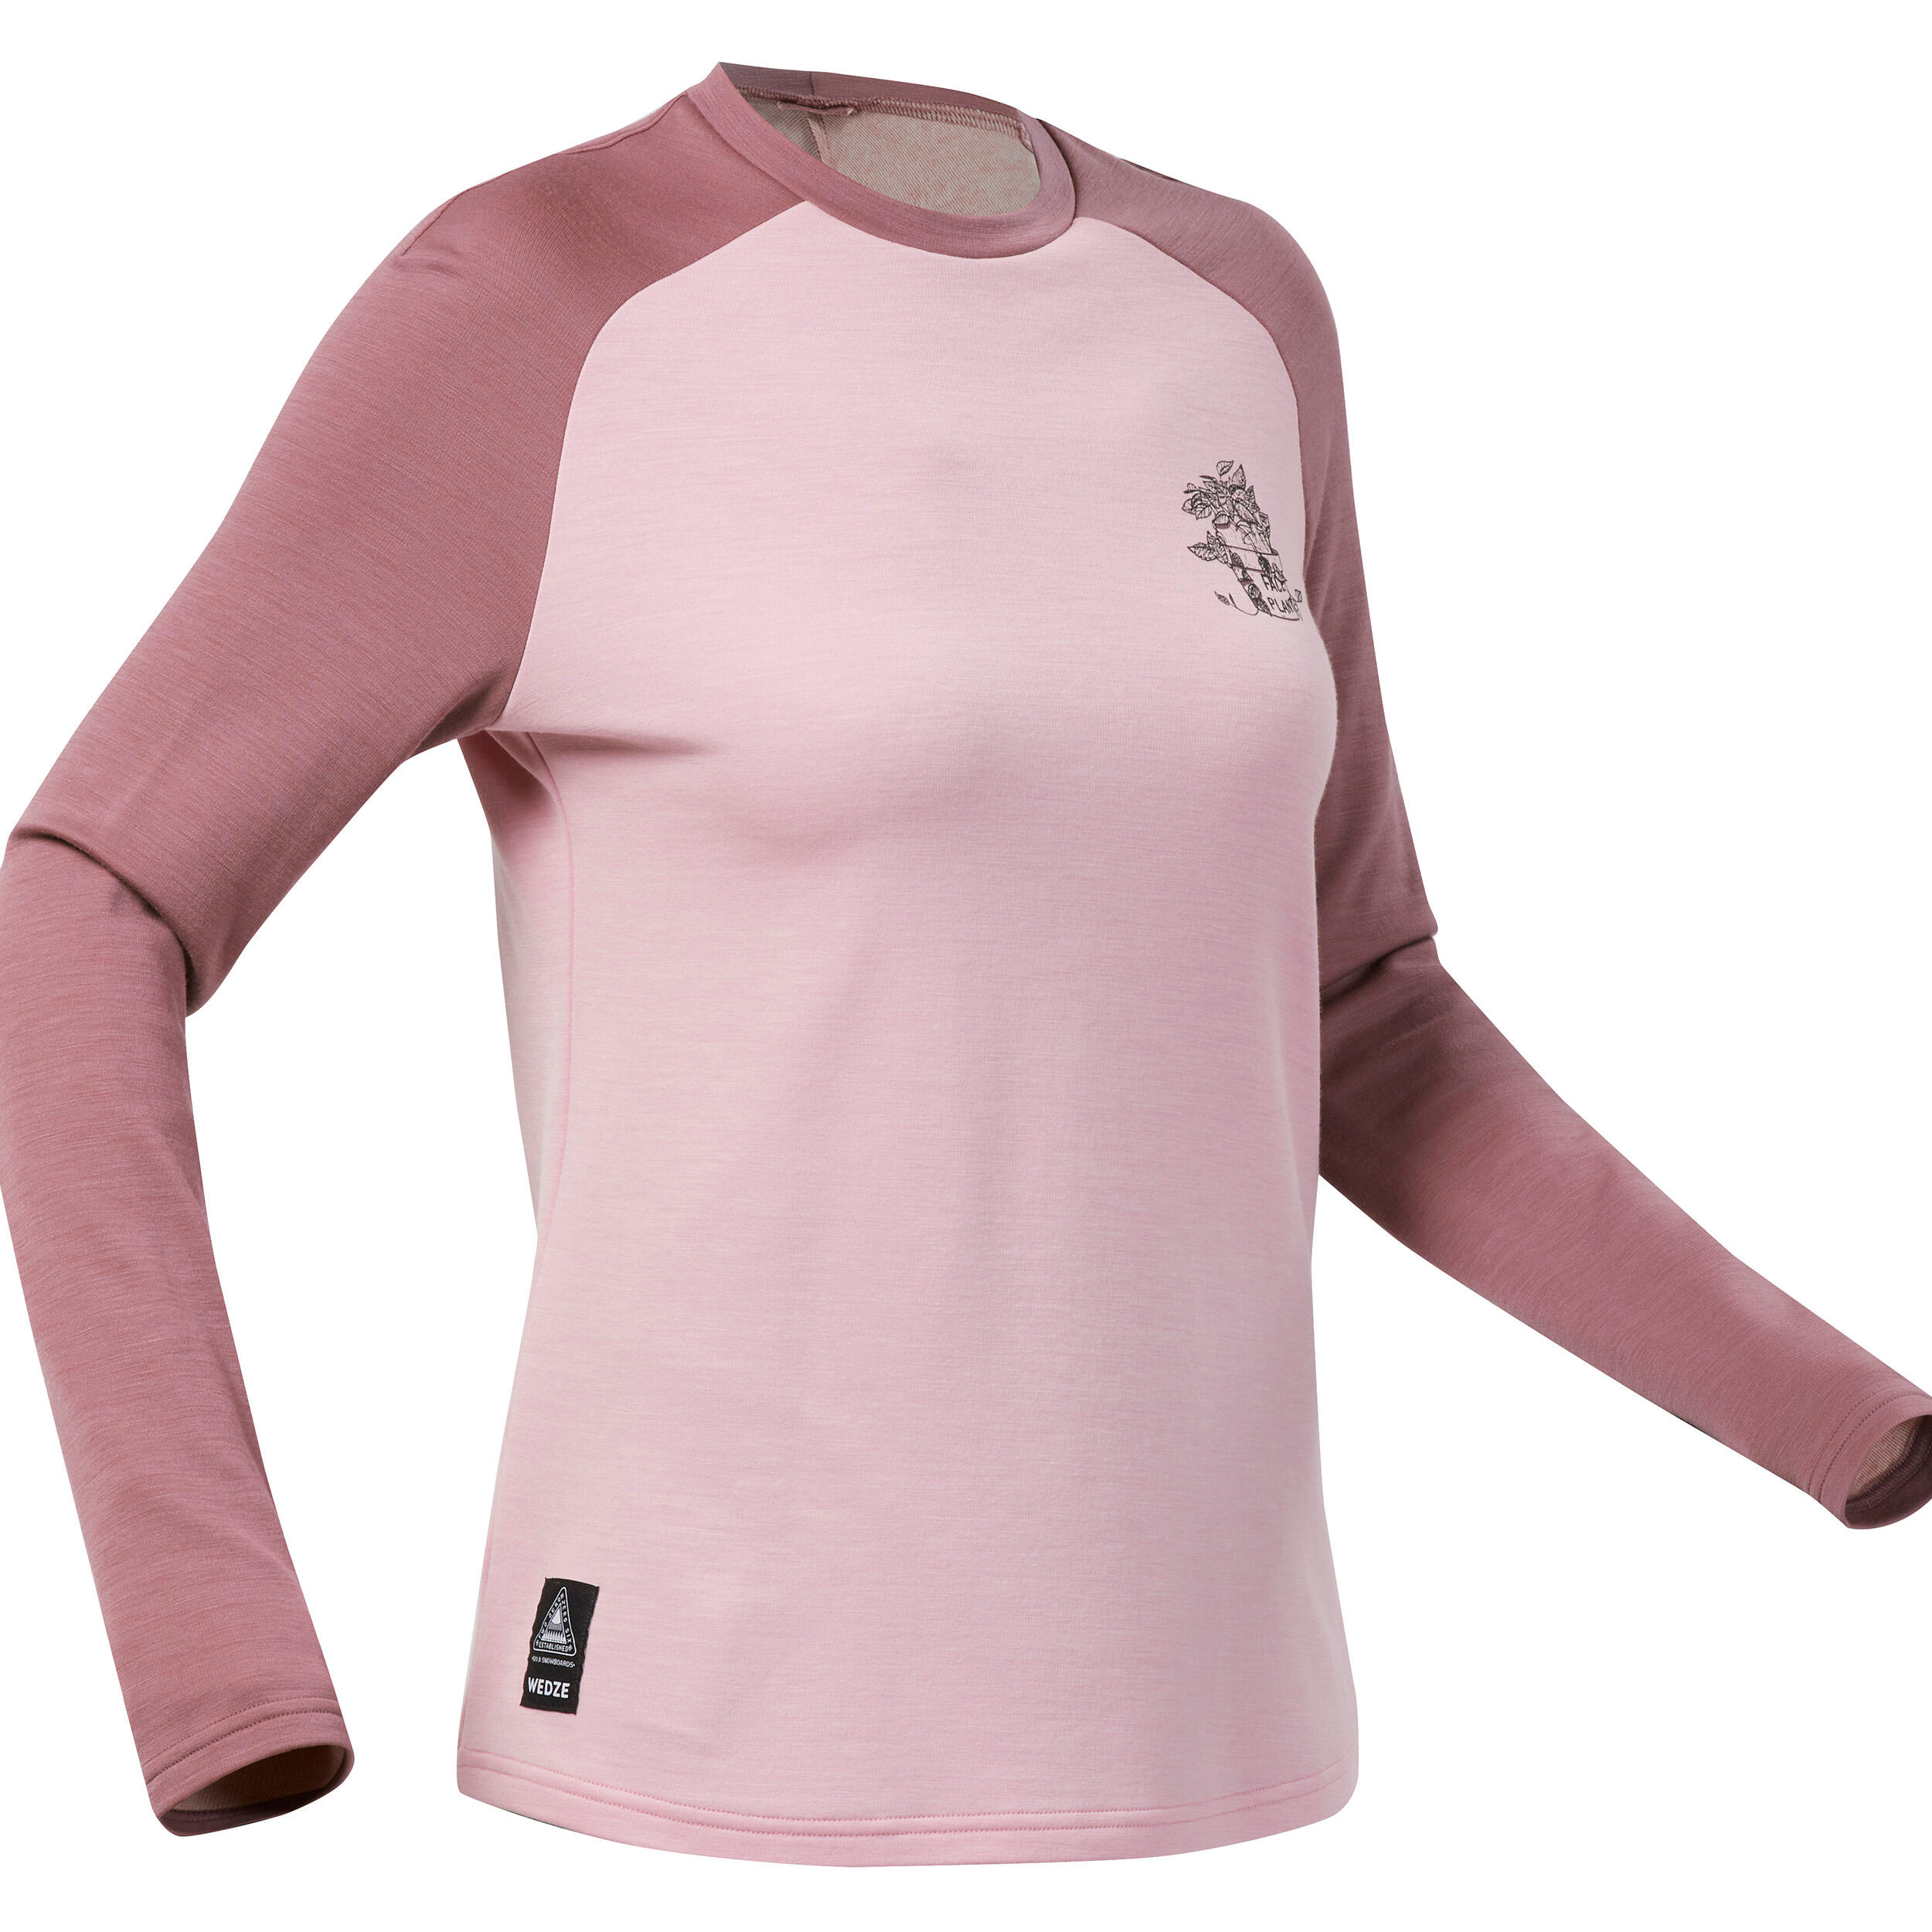 Women’s Merino Wool Base Layer Top - BL 900 Pink